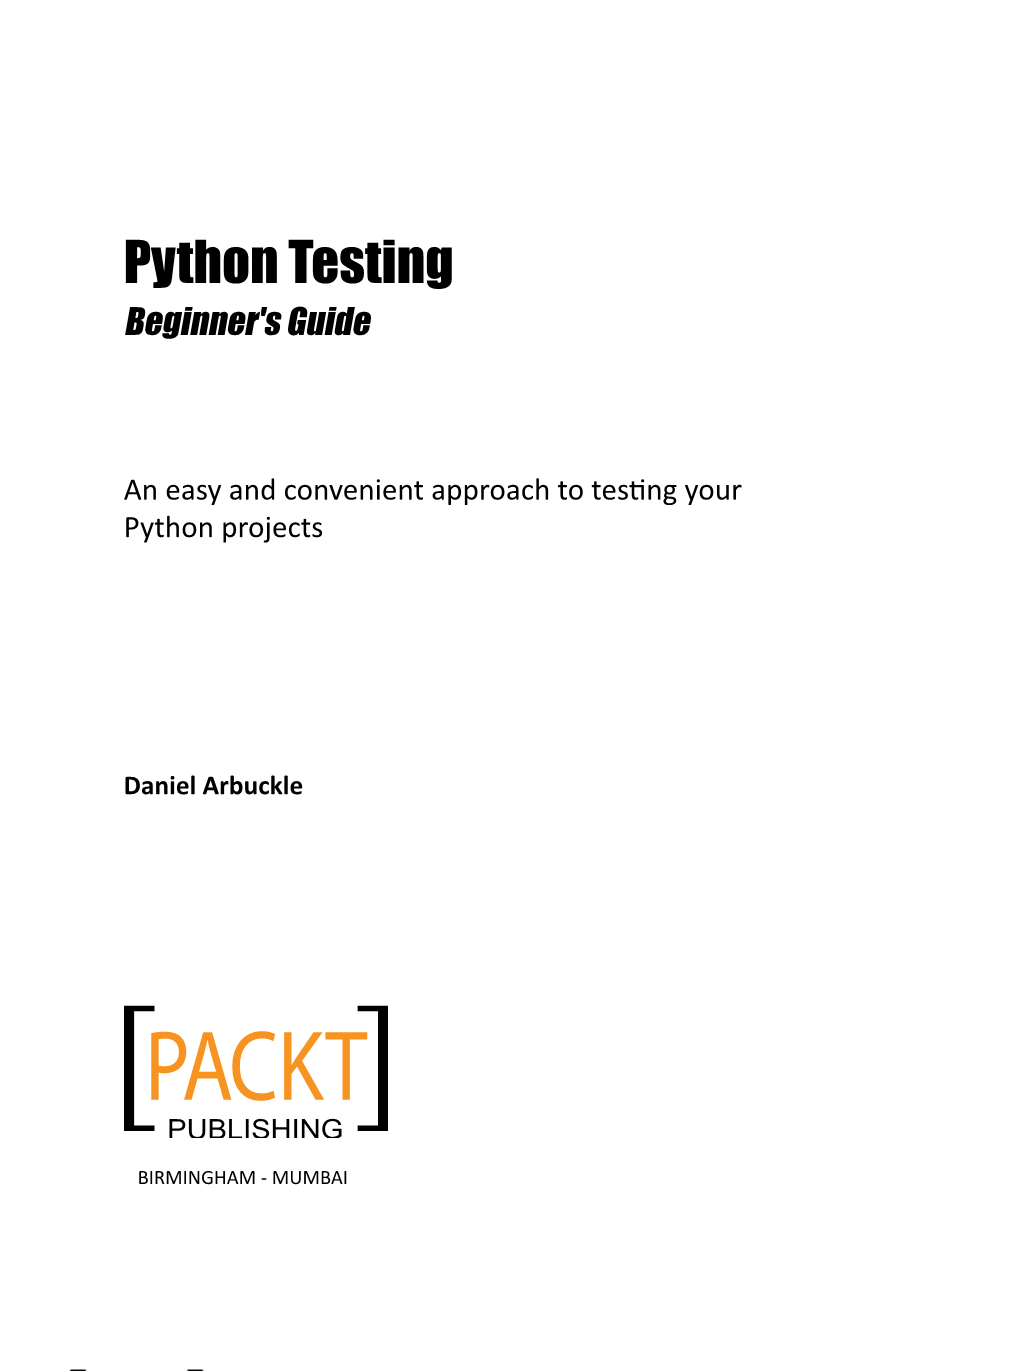 Python Testing Beginner's Guide